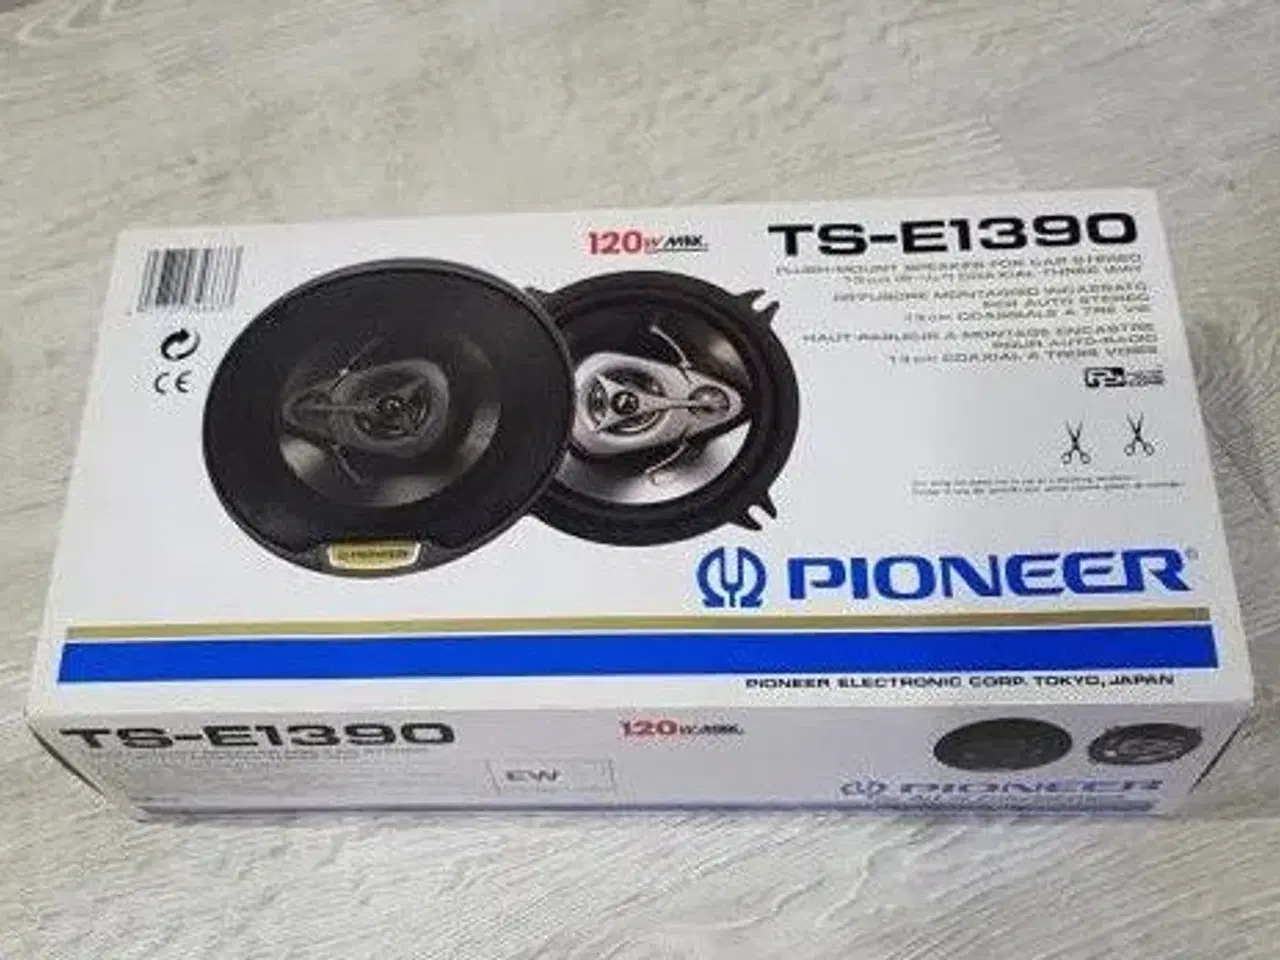 Billede 1 - Pioneer TS-E1390 højtaler Købes